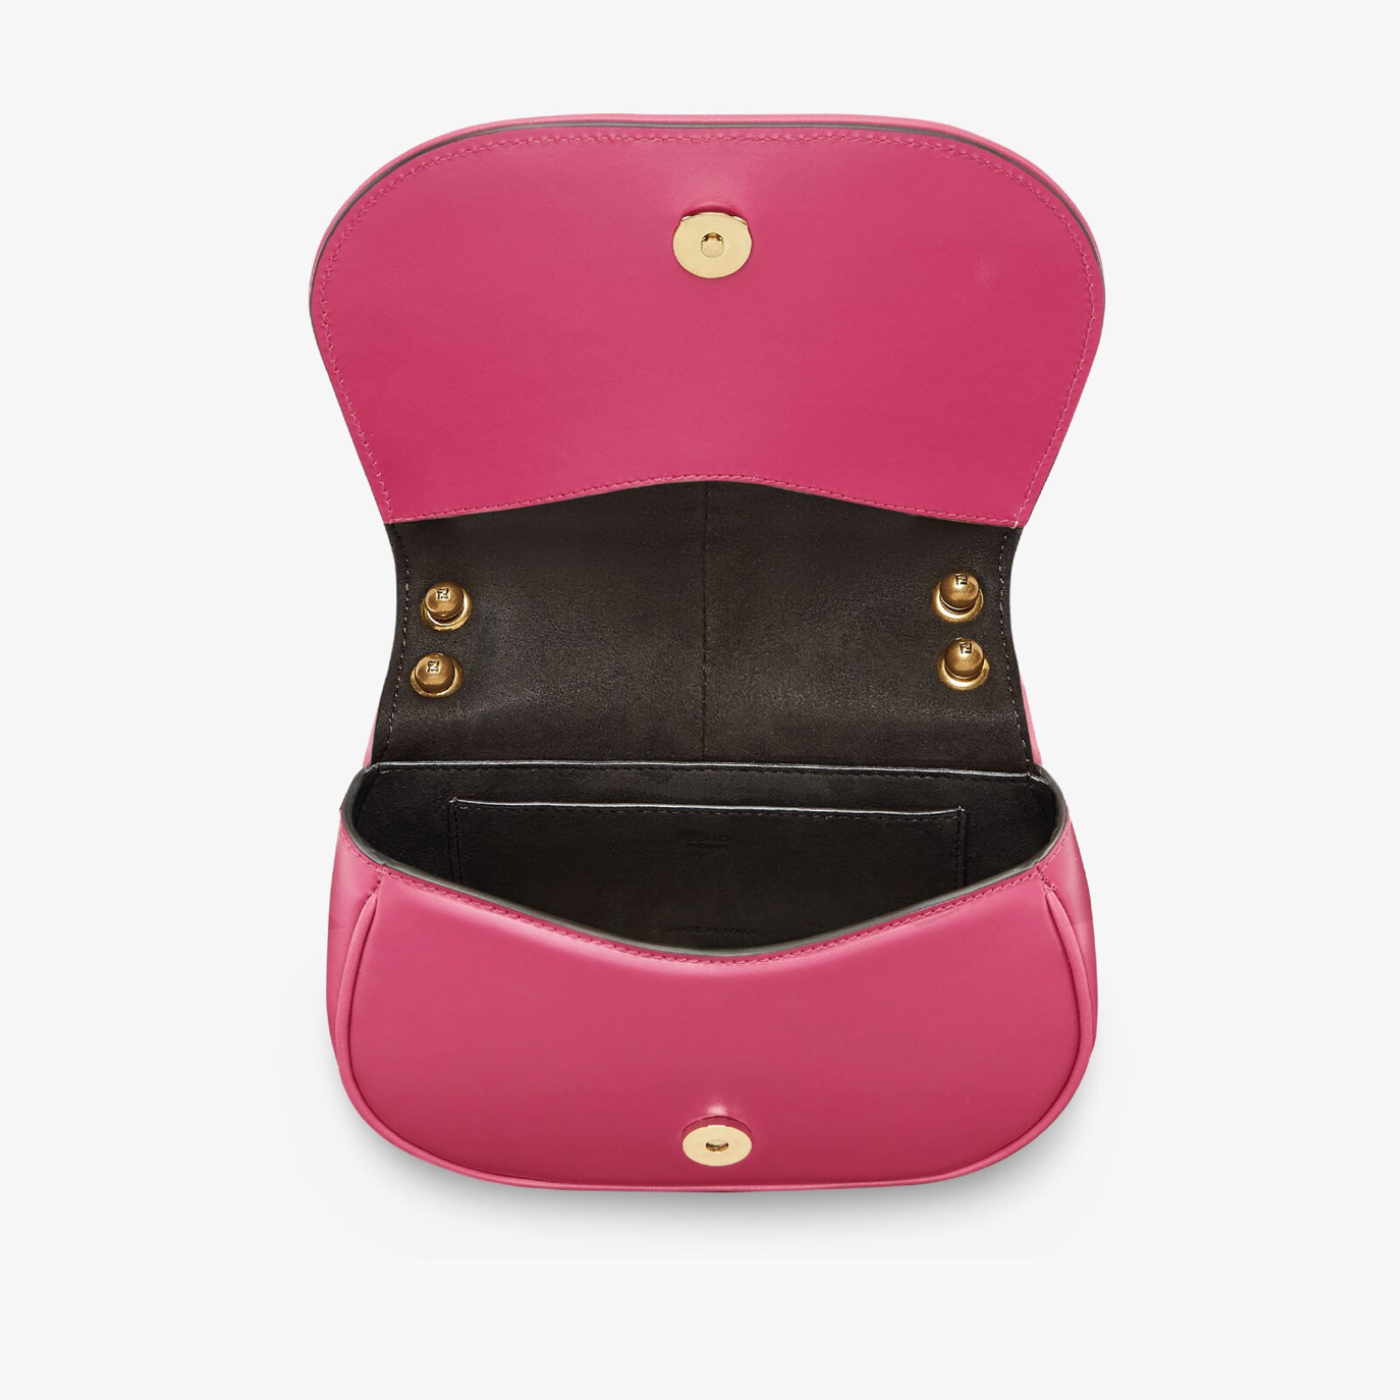 C’mon Mini Bag in Pink Handbags FENDI - LOLAMIR